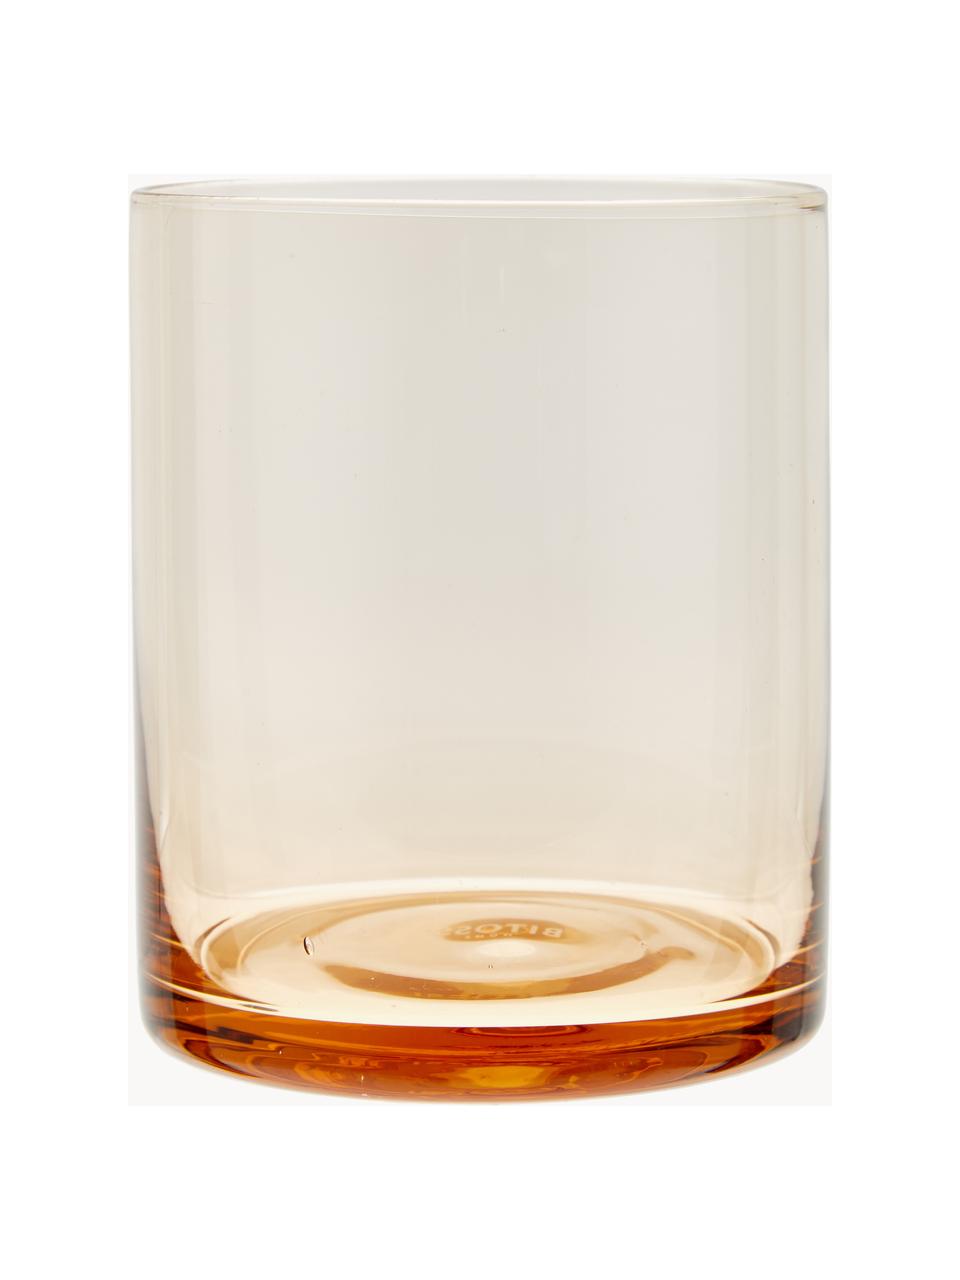 Set 6 bicchieri acqua in vetro soffiato in diverse forme e colori Desigual, Vetro soffiato, Multicolore, trasparente, Ø 8 x Alt. 10 cm, 200 ml